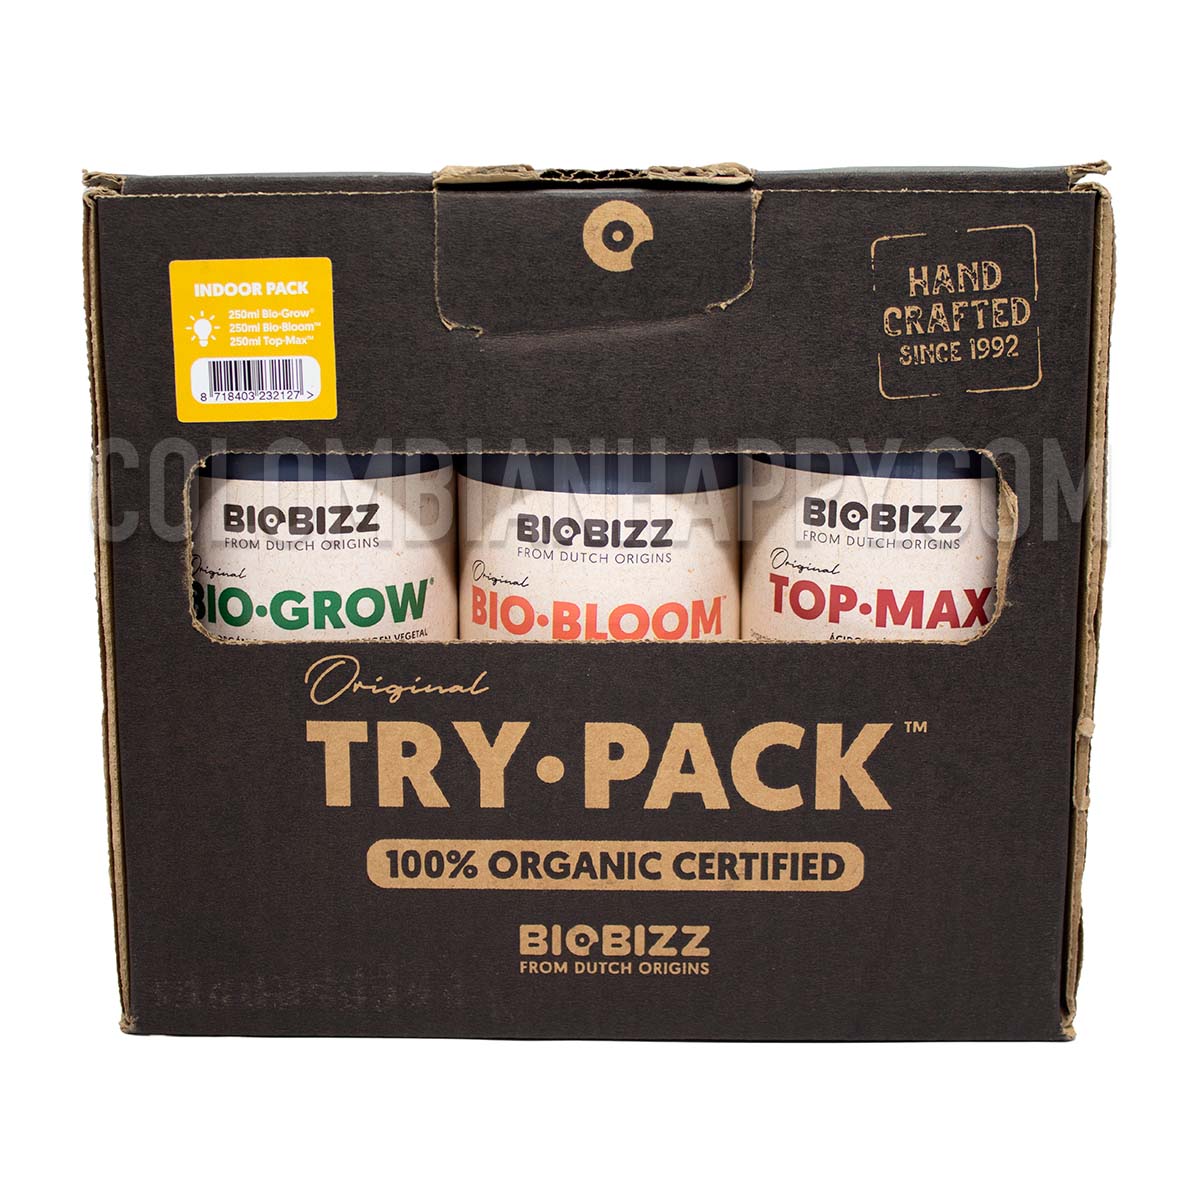 Trypack Indoor Pack Biobizz